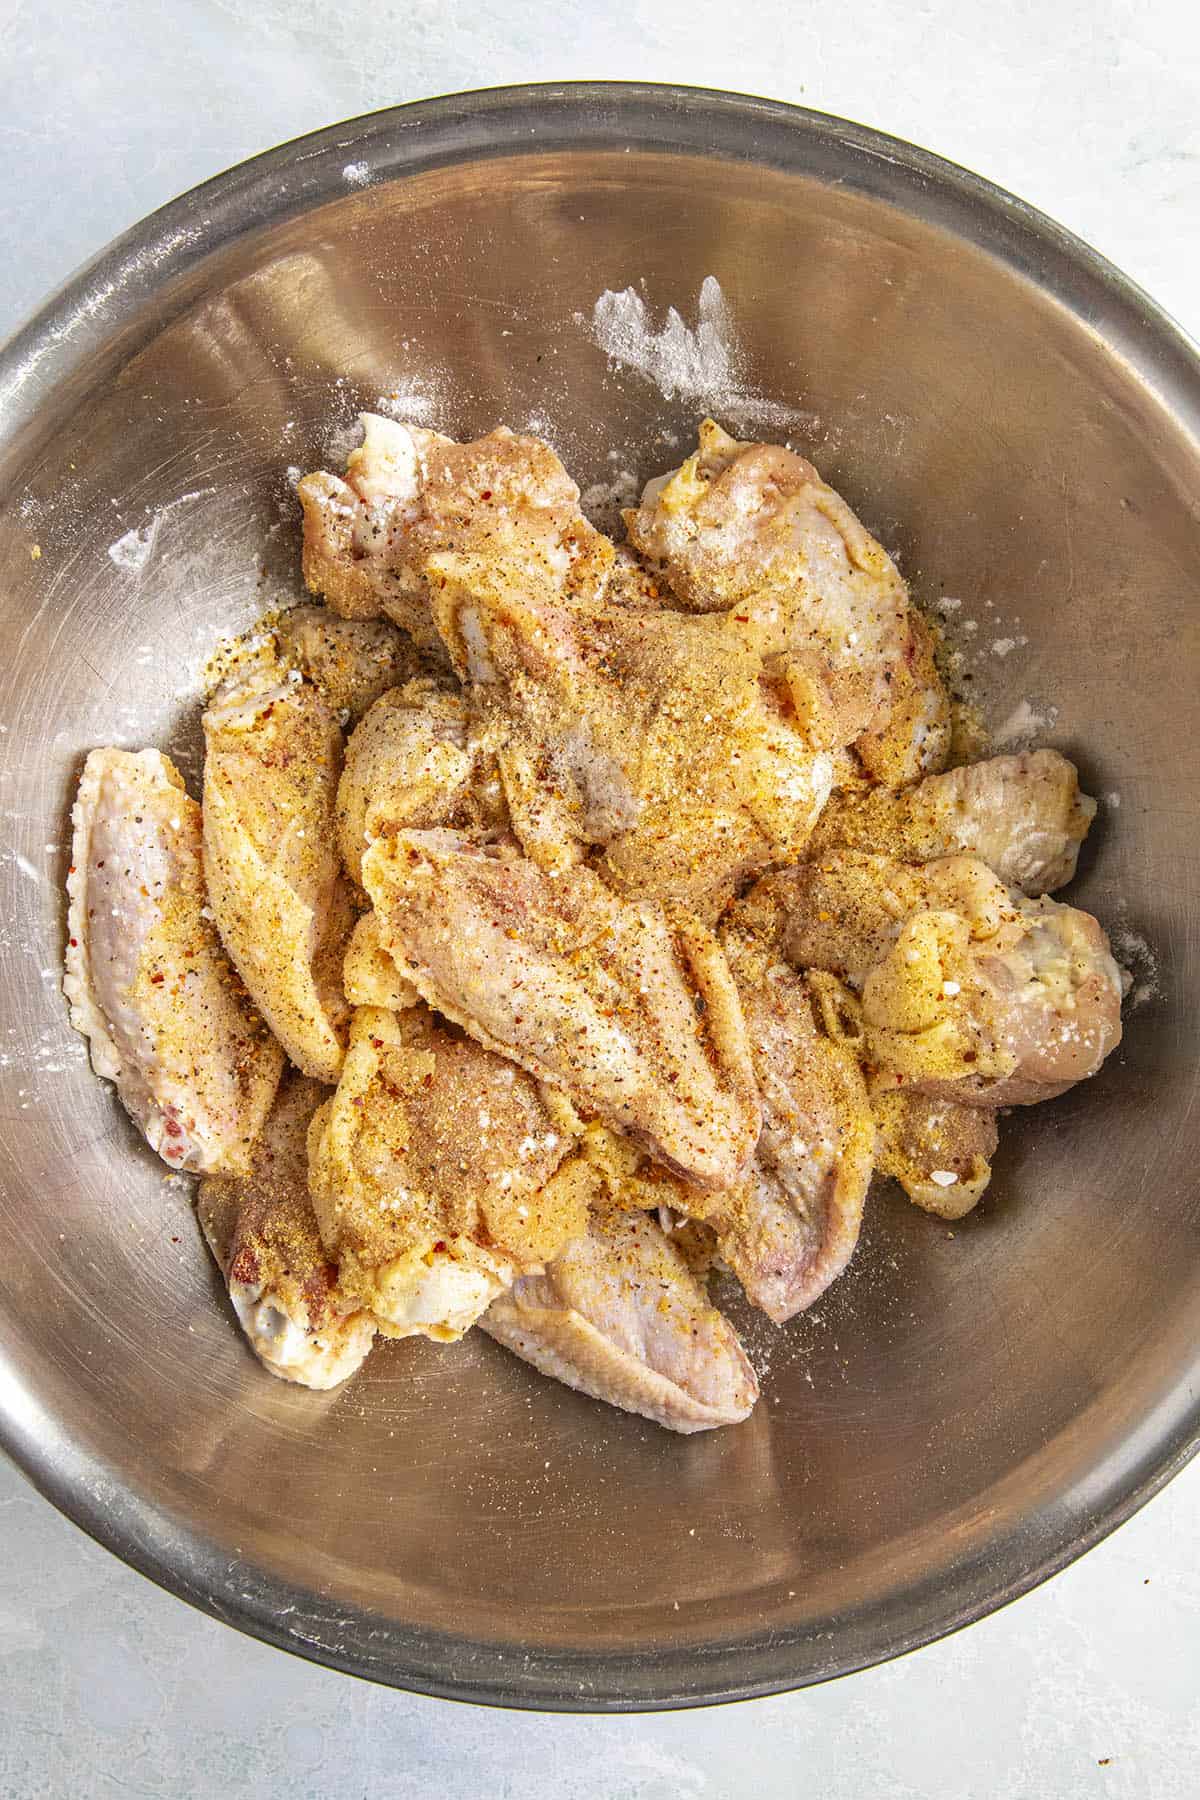 Seasoning the chicken wings